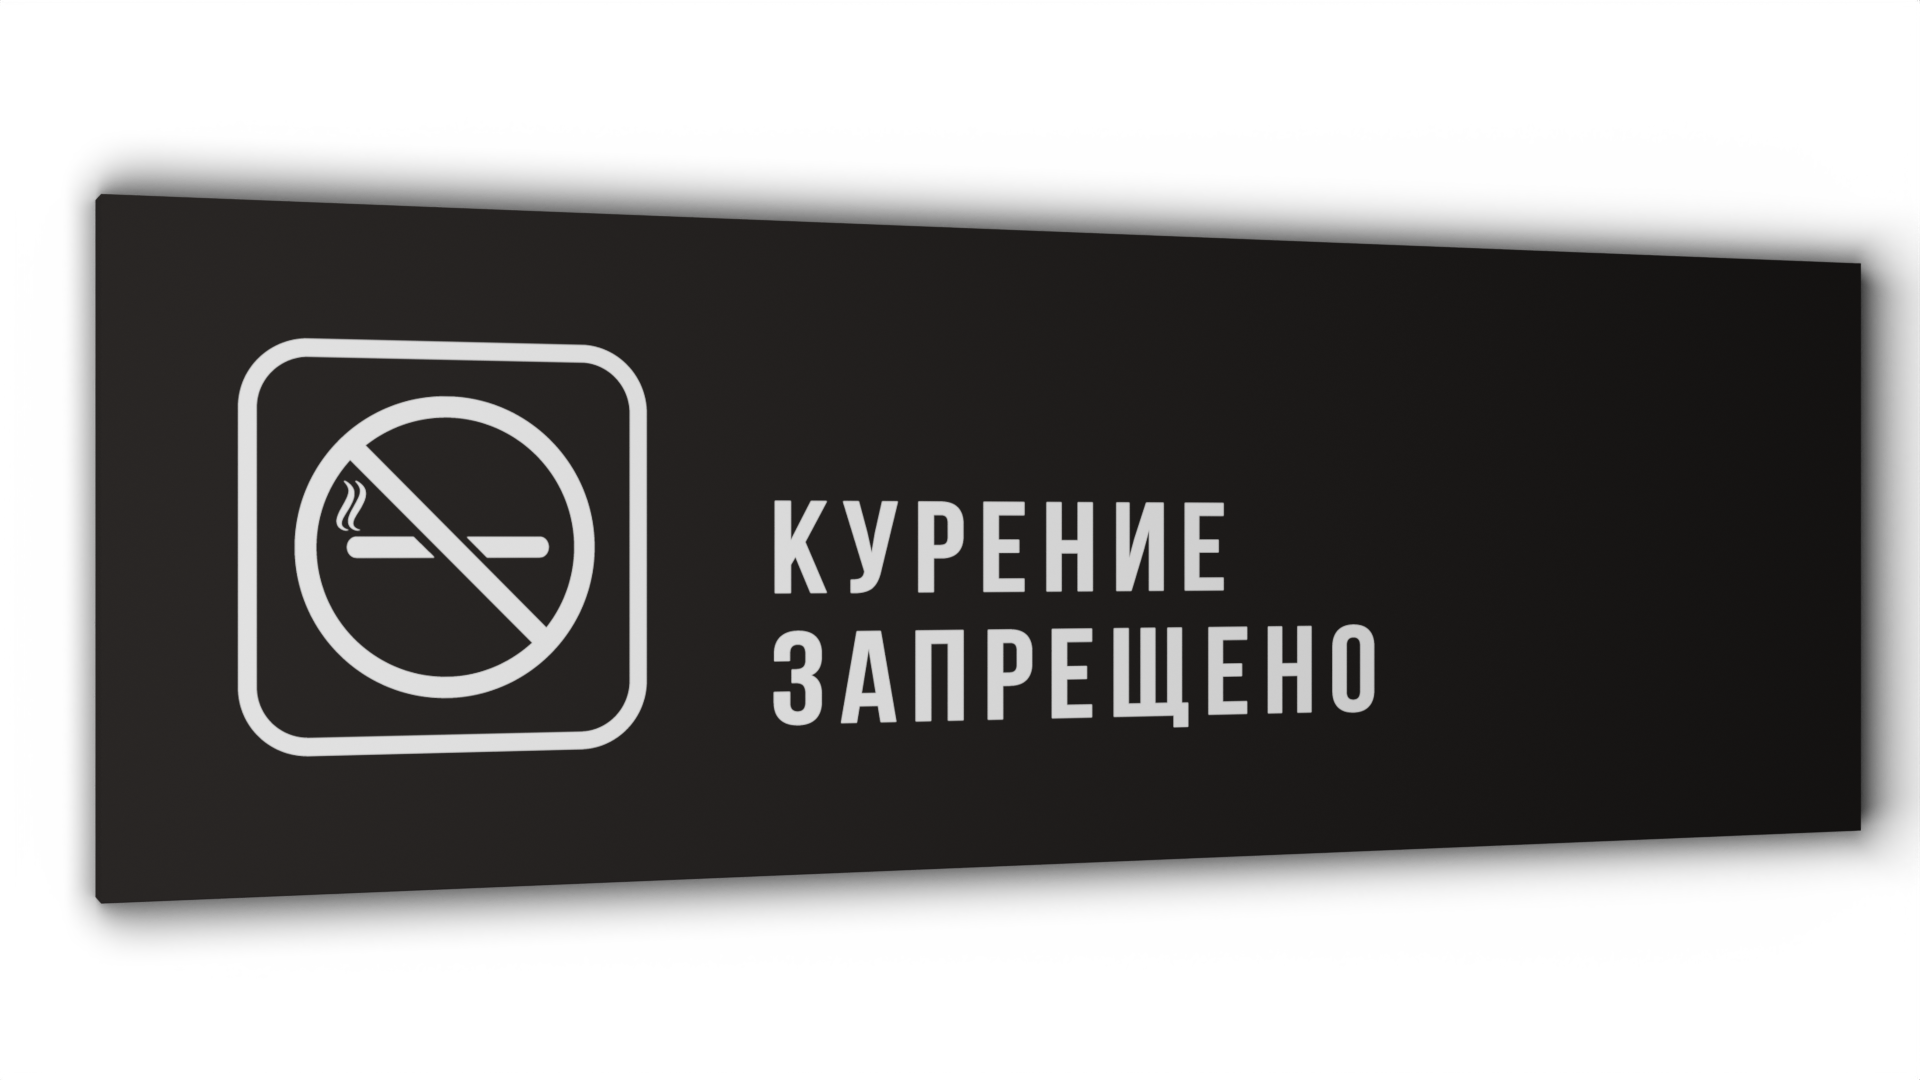 Табличка Курение запрещено, Черная матовая, 30 см х 10 см